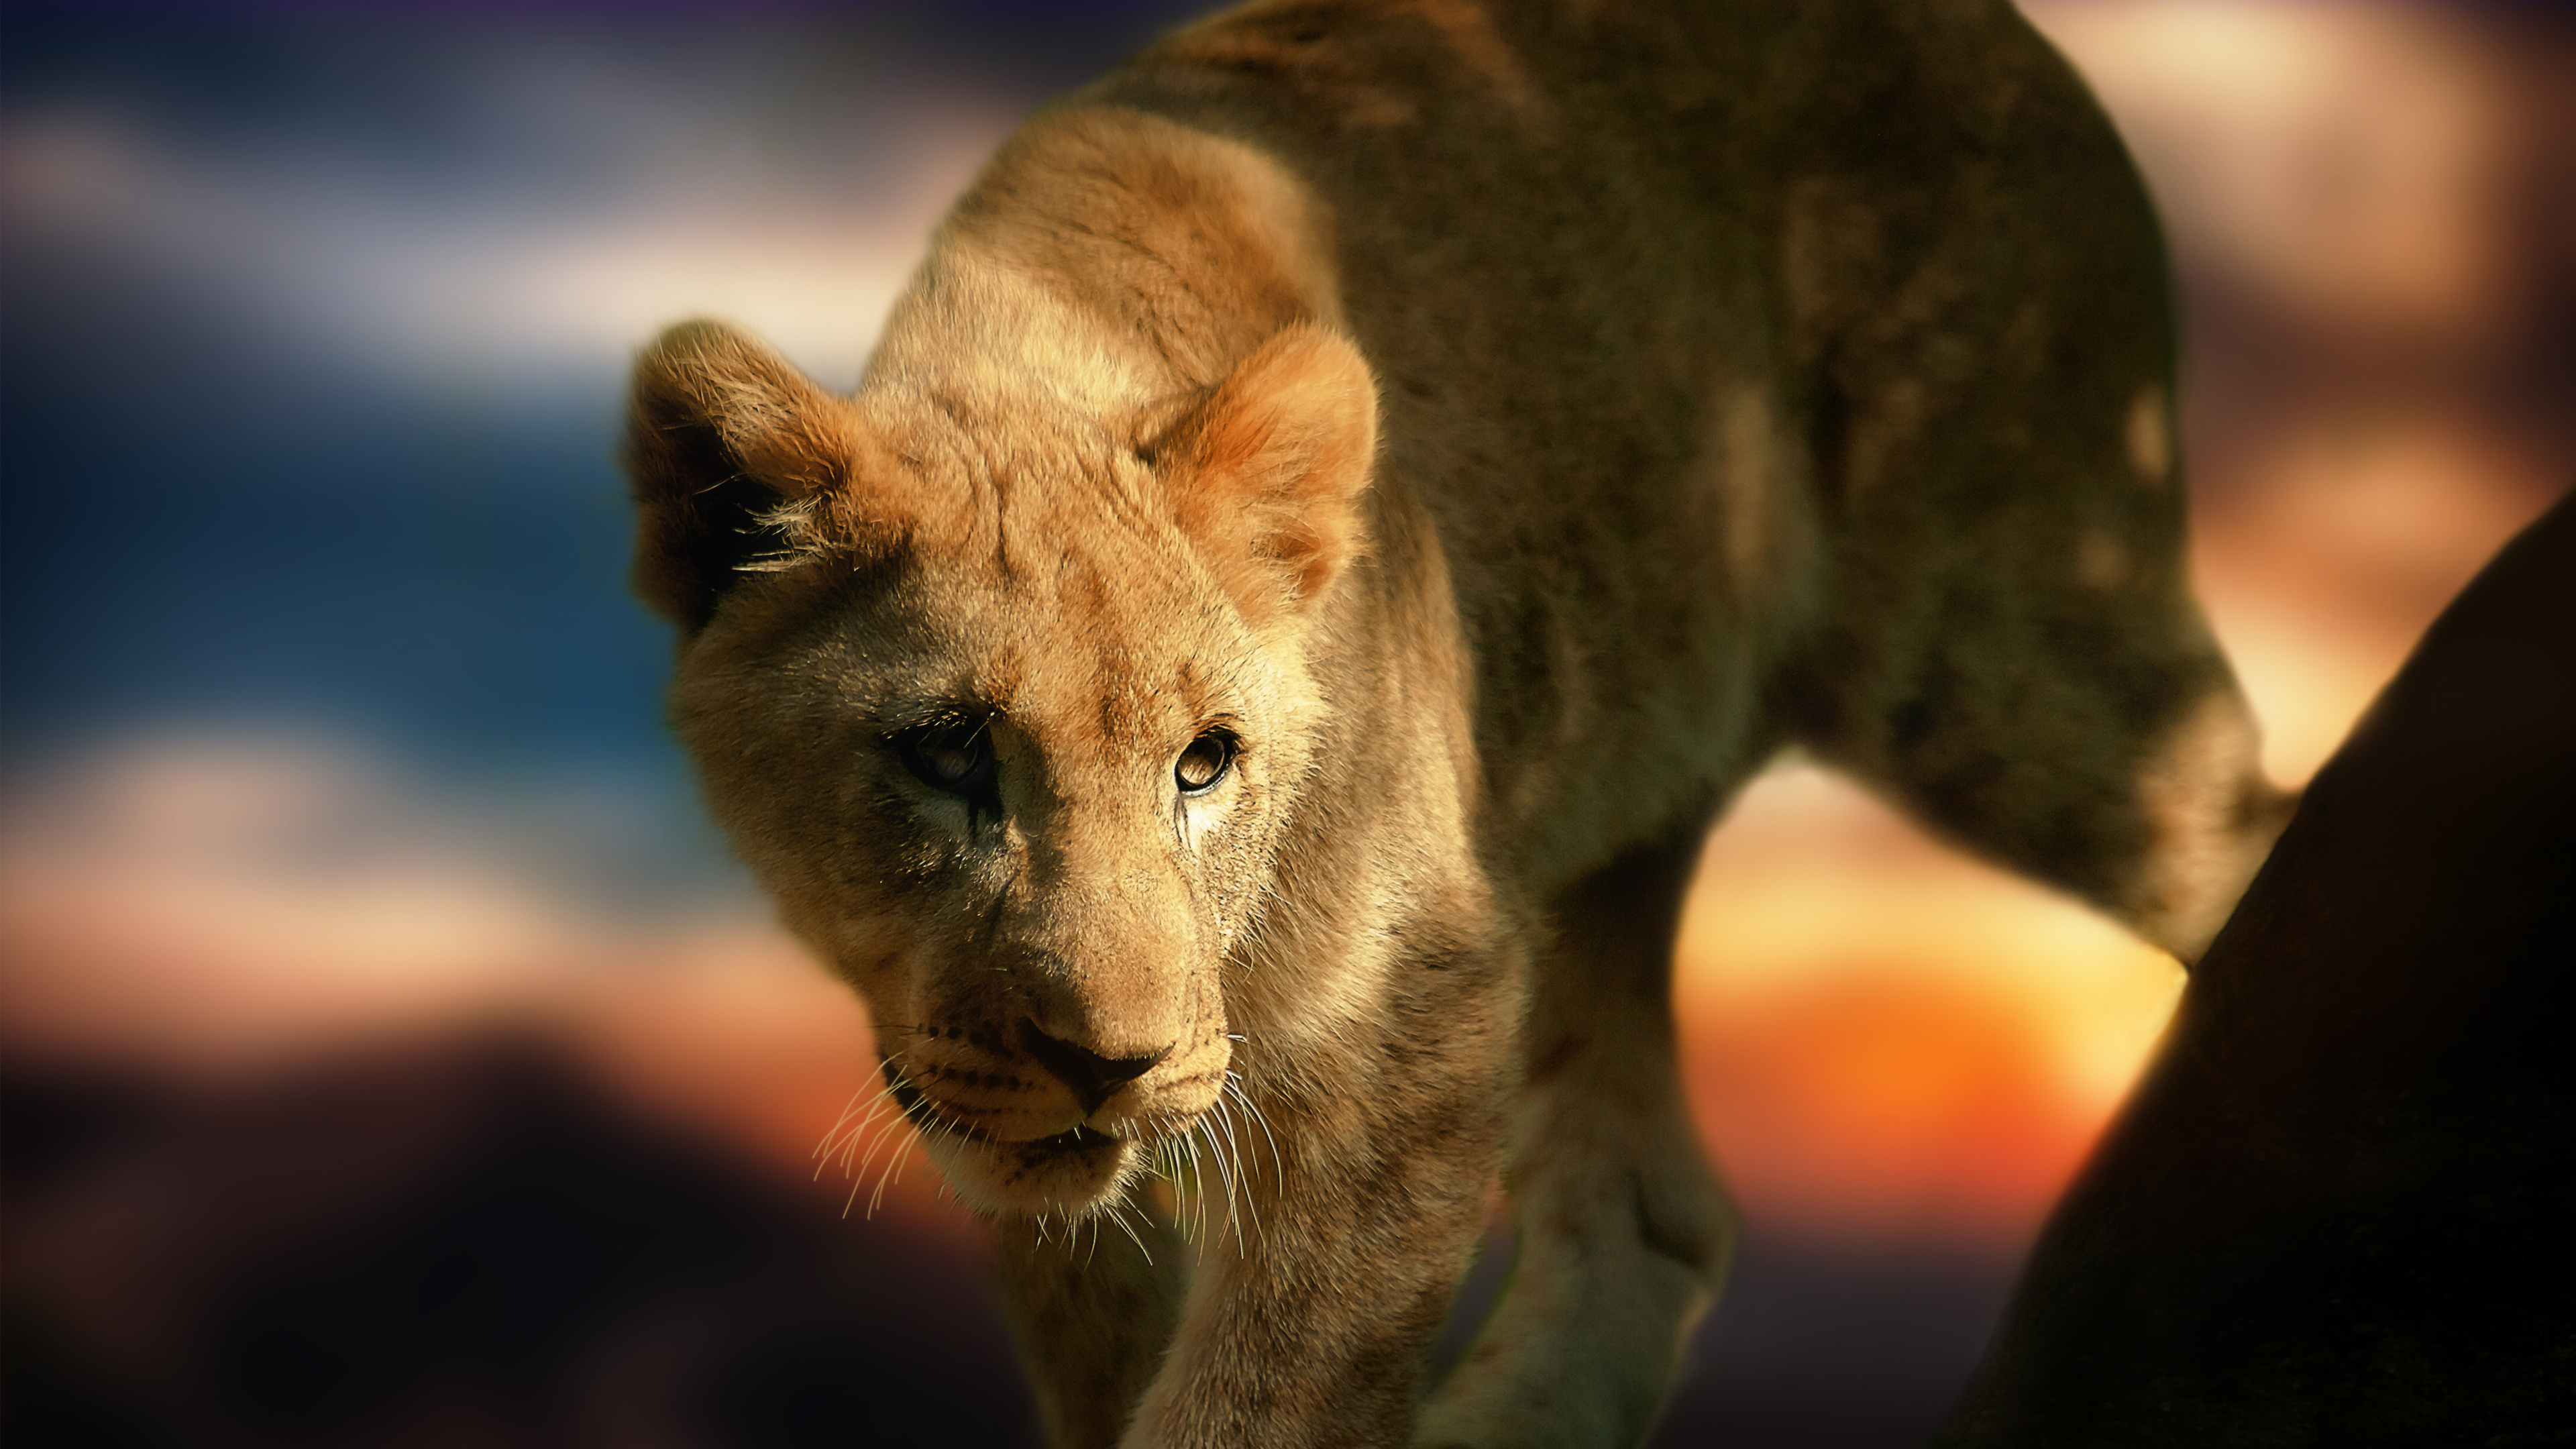 21100 Lion Cub Stock Photos Pictures  RoyaltyFree Images  iStock  Lion  cub white background Lion cub kenya Mountain lion cub